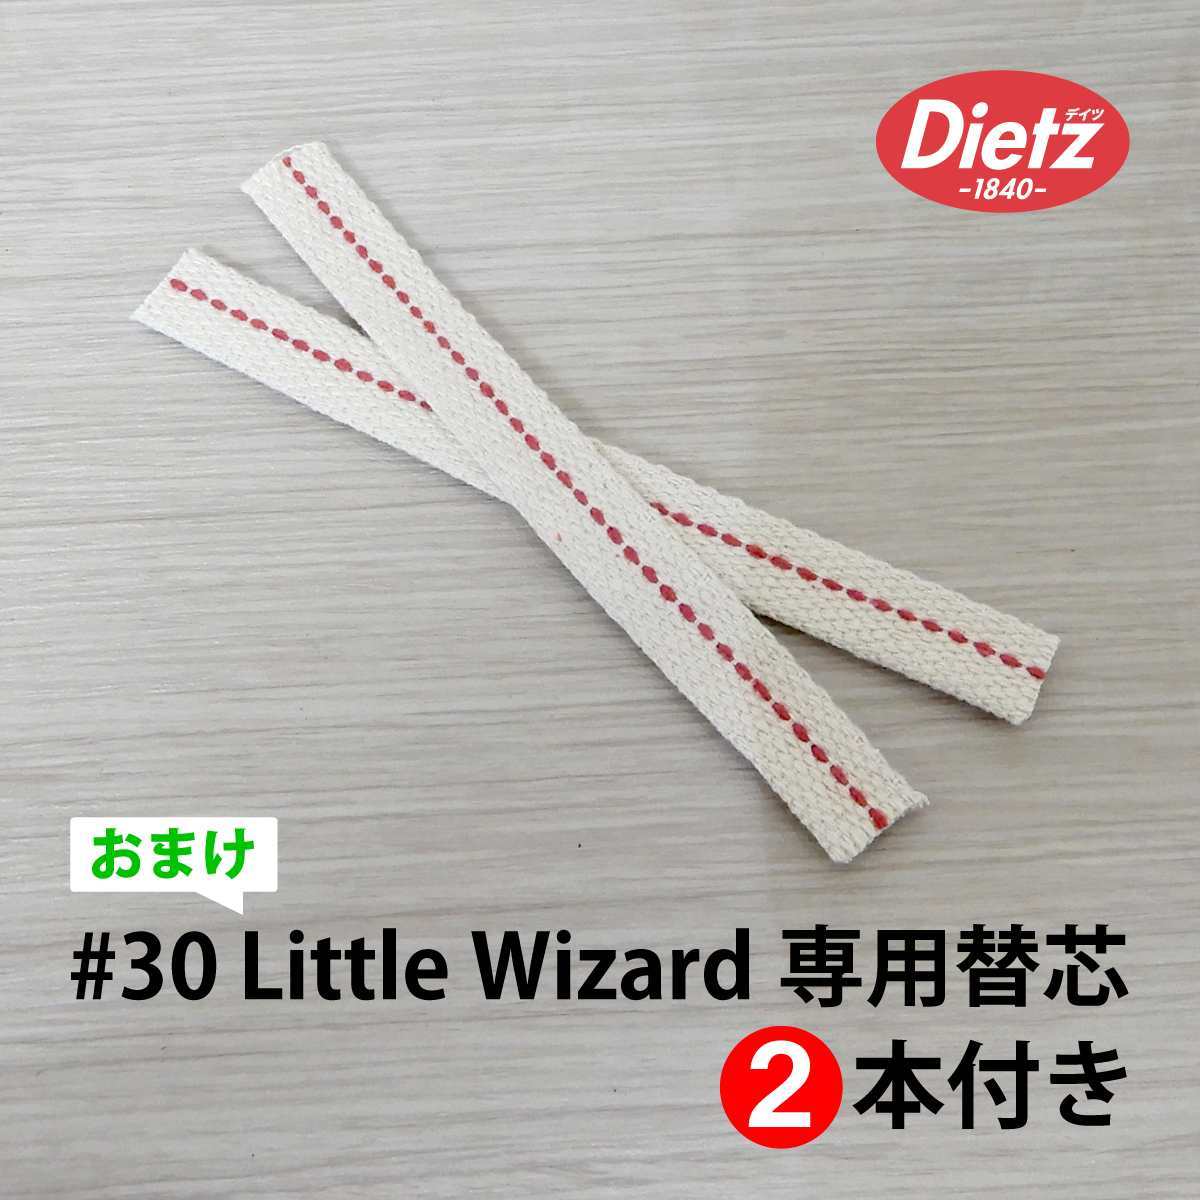 大セール【送料無料】新品 Dietz #30 Little Wizard Oil Lantern - Grey Nickel Trim 替芯付 ◇デイツ グレー ニッケル ハリケーンランタン_画像10